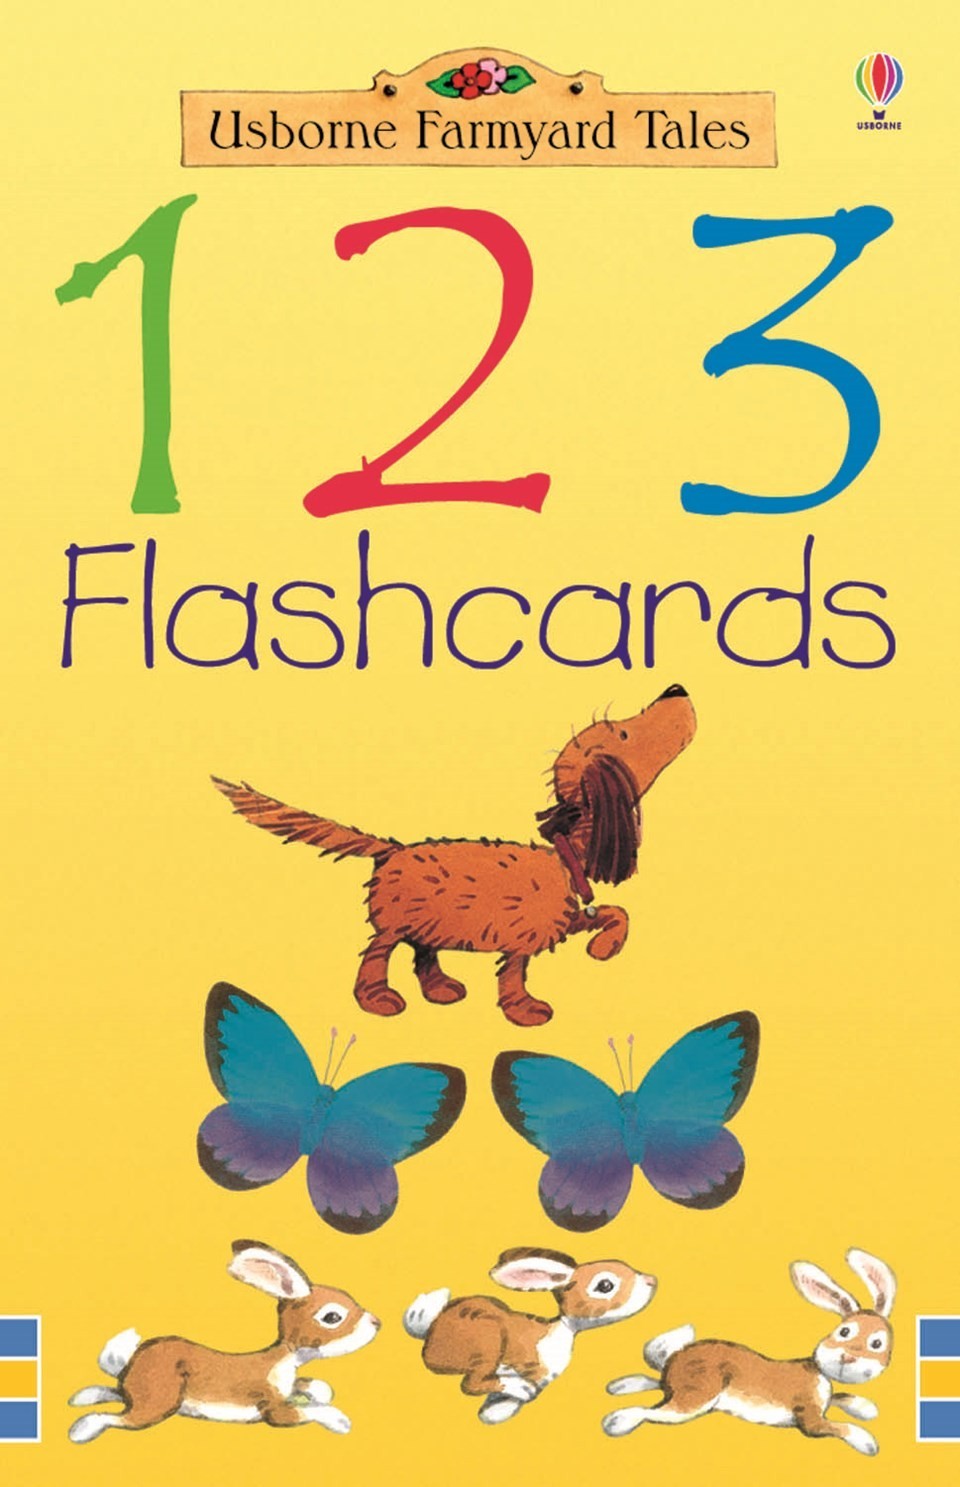 Farmyard Tales 1 2 3 flashcards